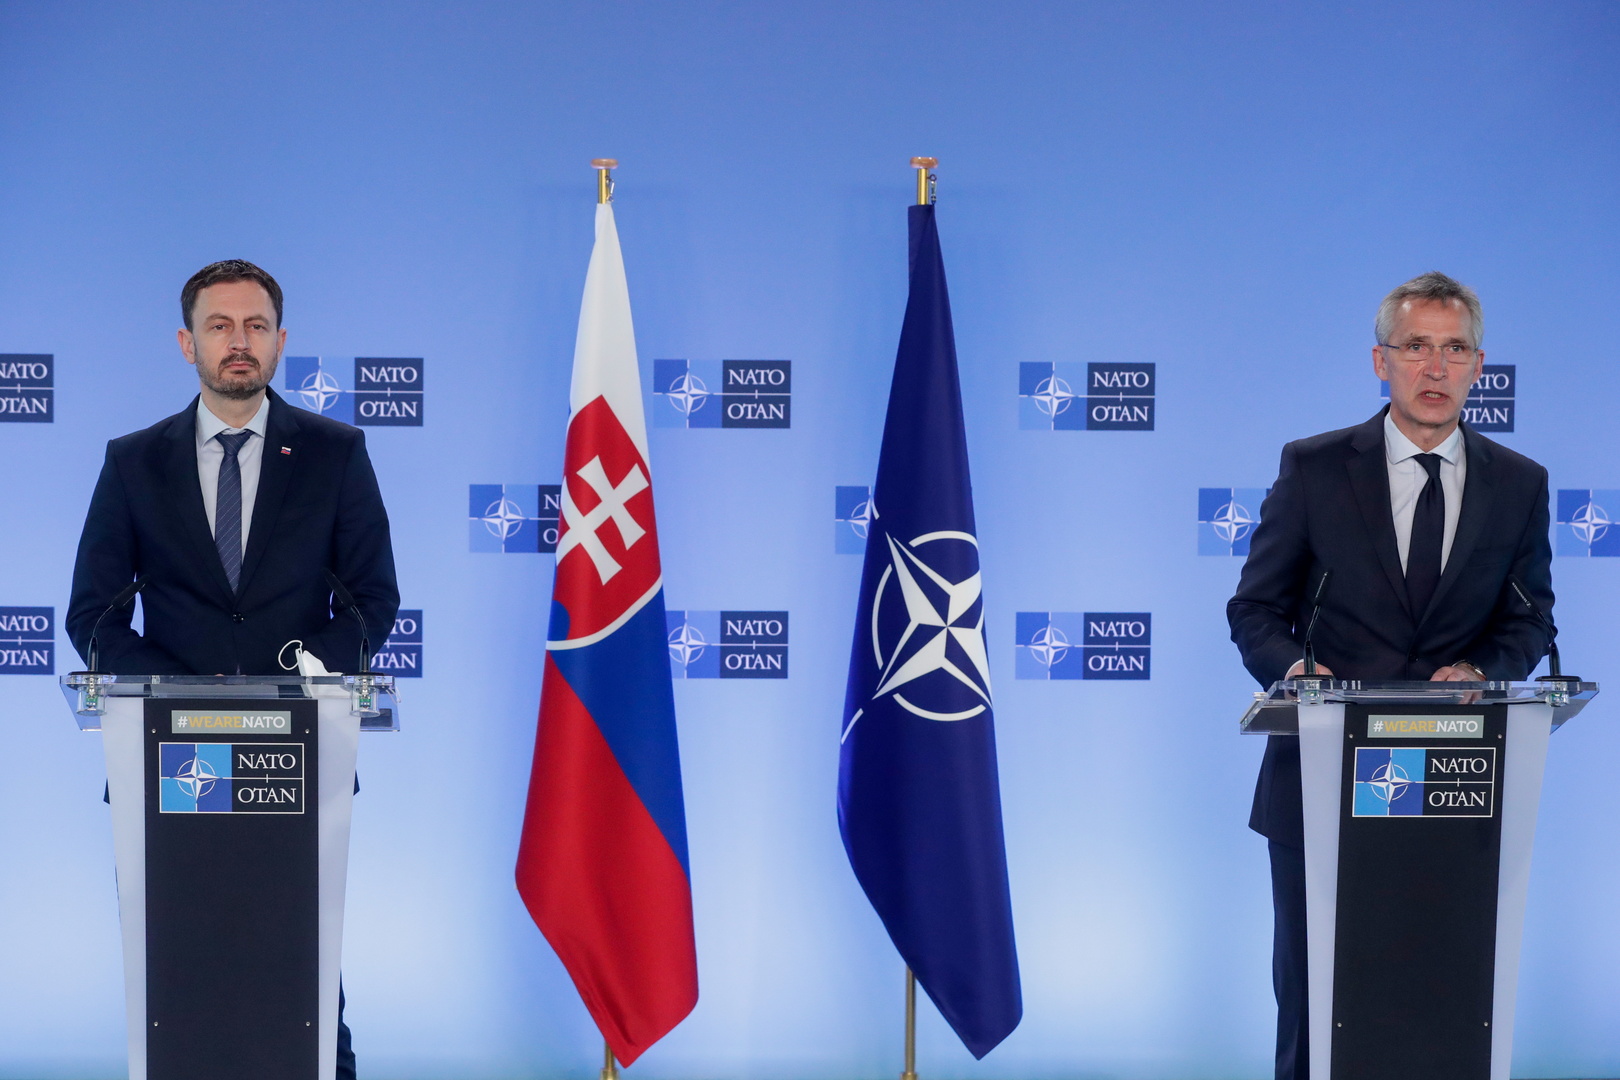 ستولتنبيرغ: الناتو لا يناقش أي مقترحات حول تغيير الحدود بين دول البلقان